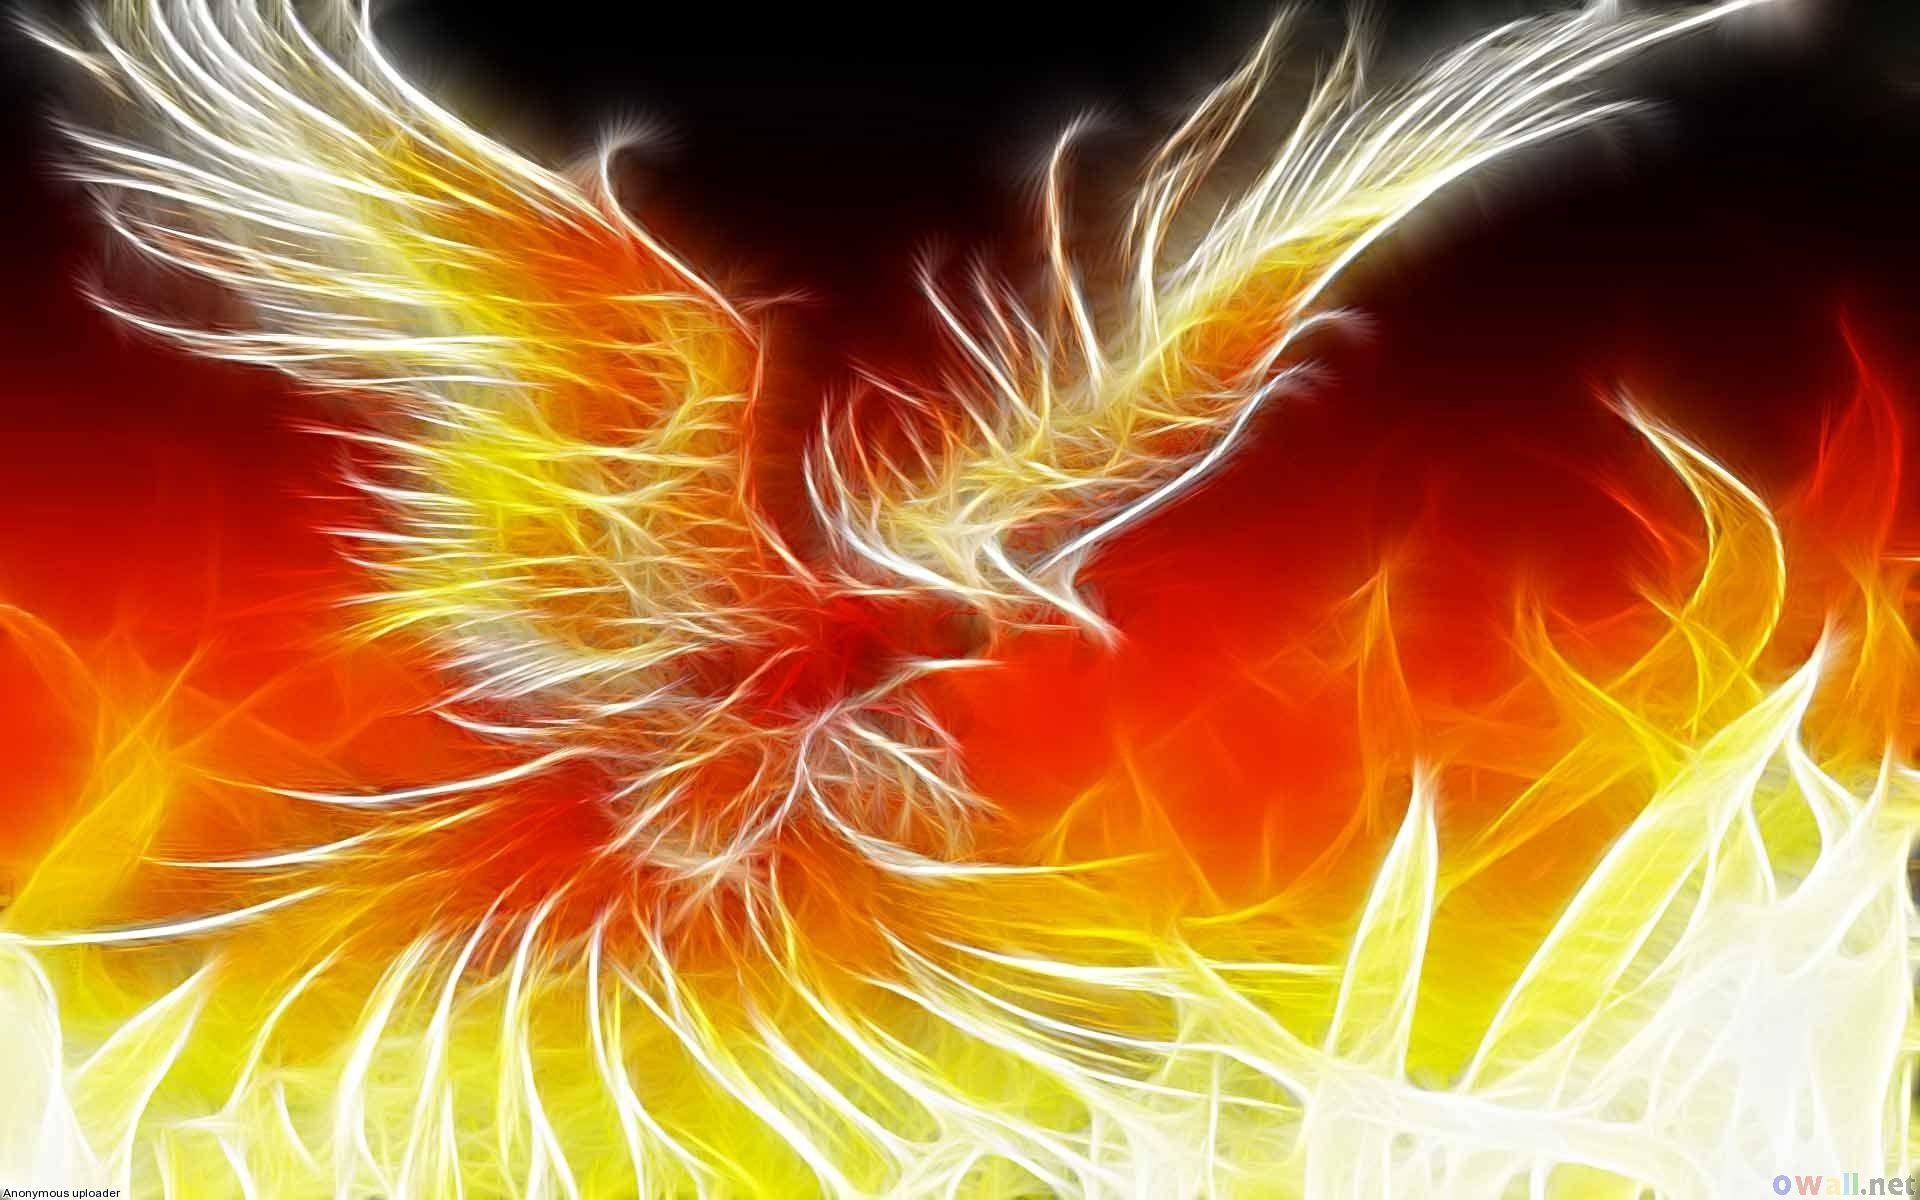 Phoenix Image